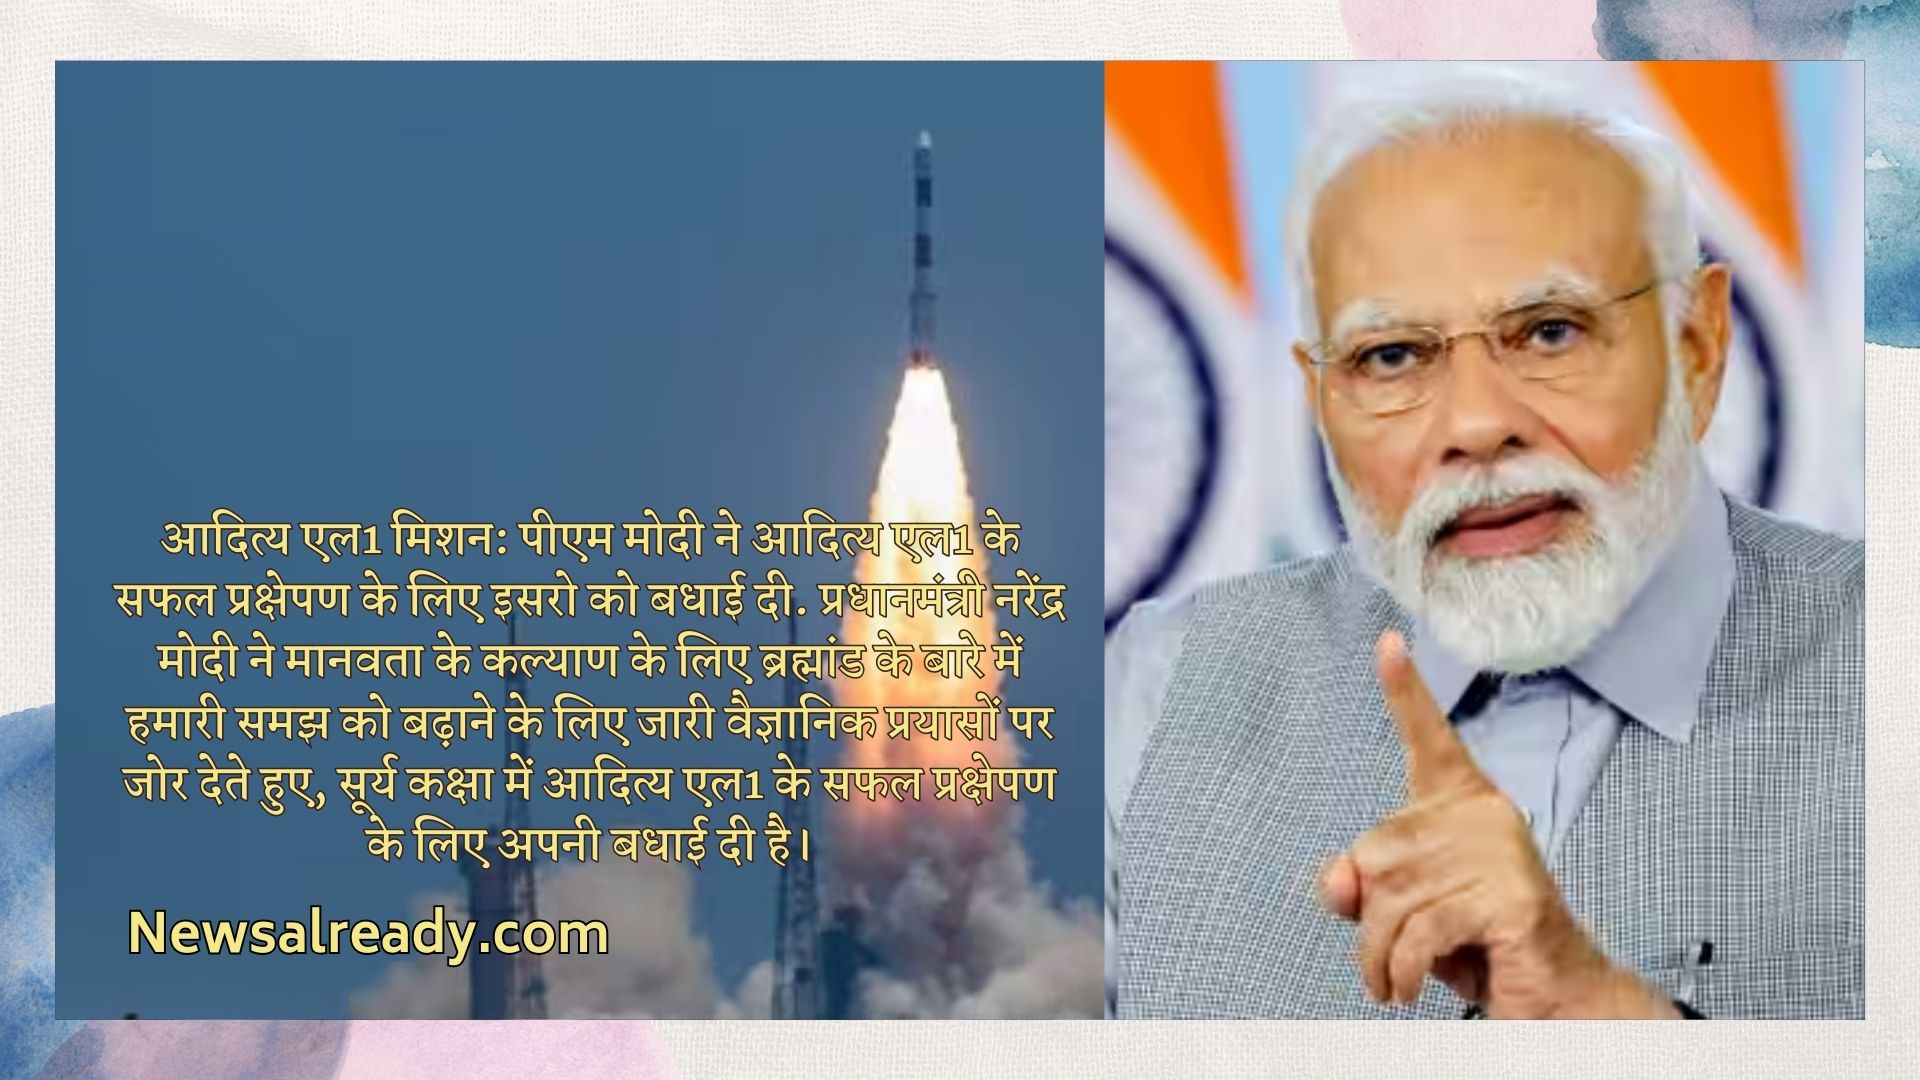 Successful Launch of Aditya L1: Pam Modi Congratulates ISRO; Do You Karnow When Aditya Will Reach Sun’s Orbit?